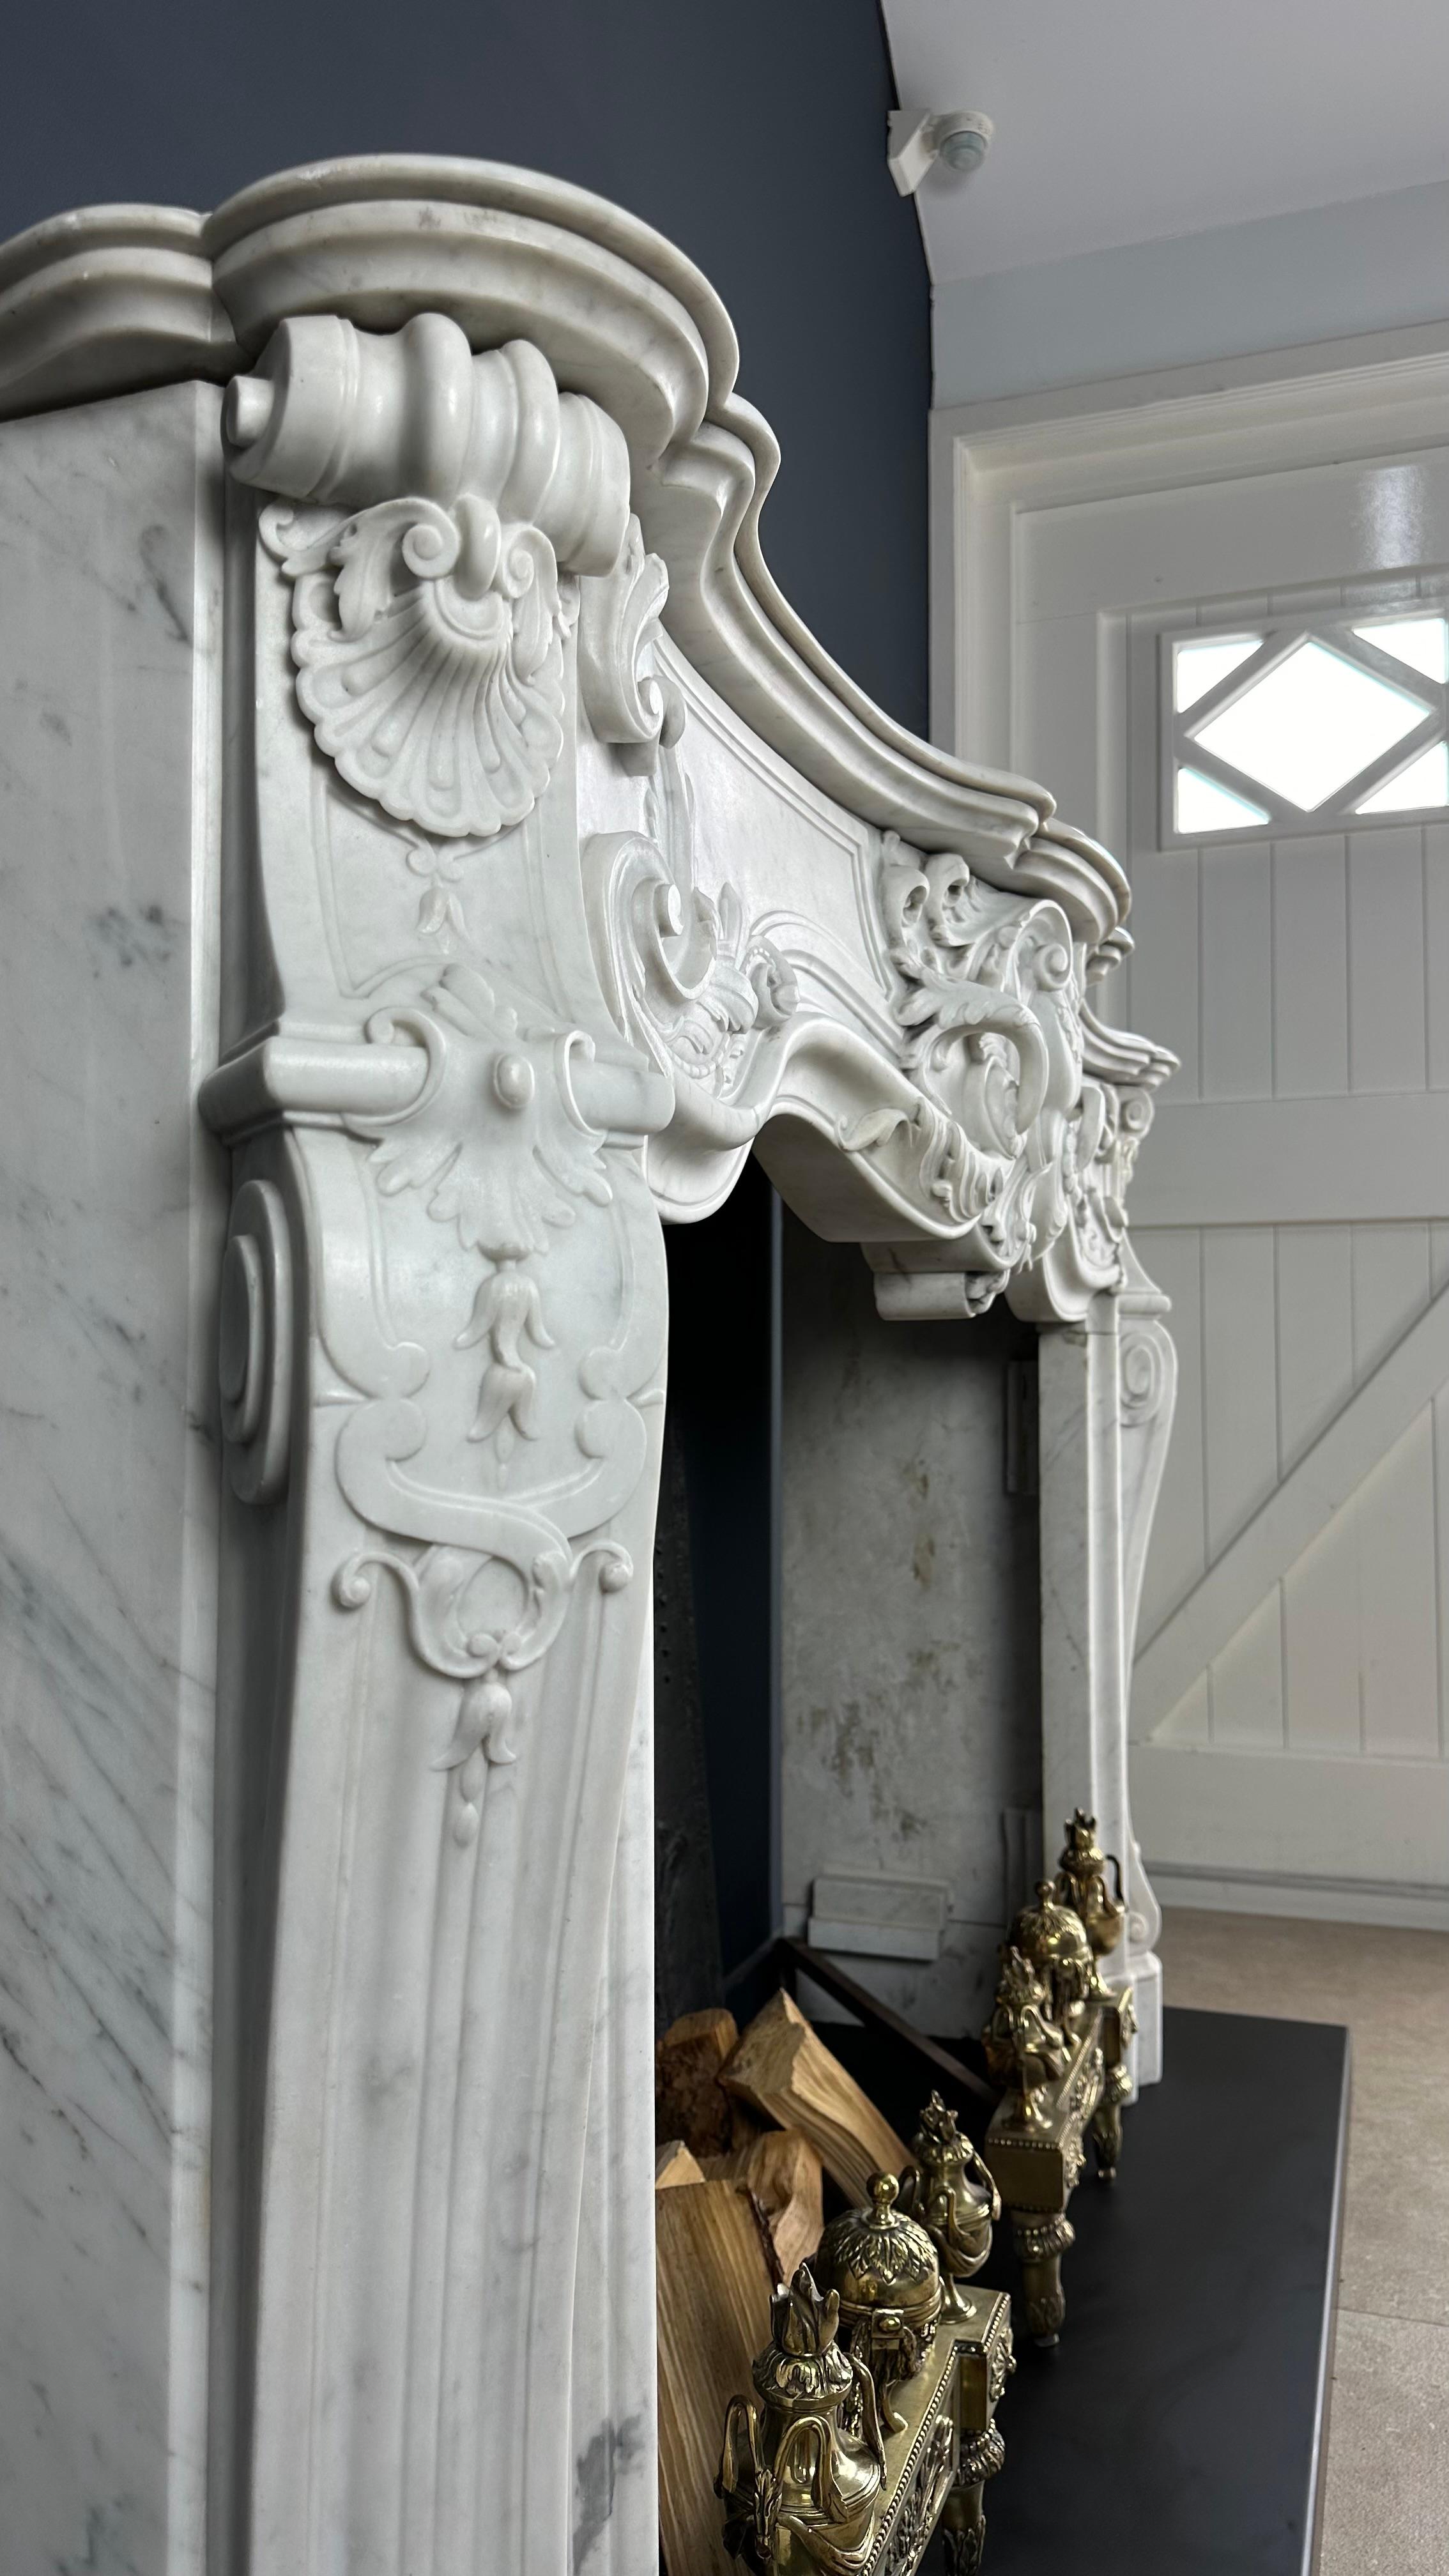 Meisterhafte Eleganz: Seltener antiker Louis XV-Kamin aus weißem Carrara-Marmor

Es ist ein außergewöhnliches Privileg, einen Schatz wie diesen auf dem Markt auftauchen zu sehen, und ich bin stolz darauf, diesen außergewöhnlichen Kamin als wertvolle